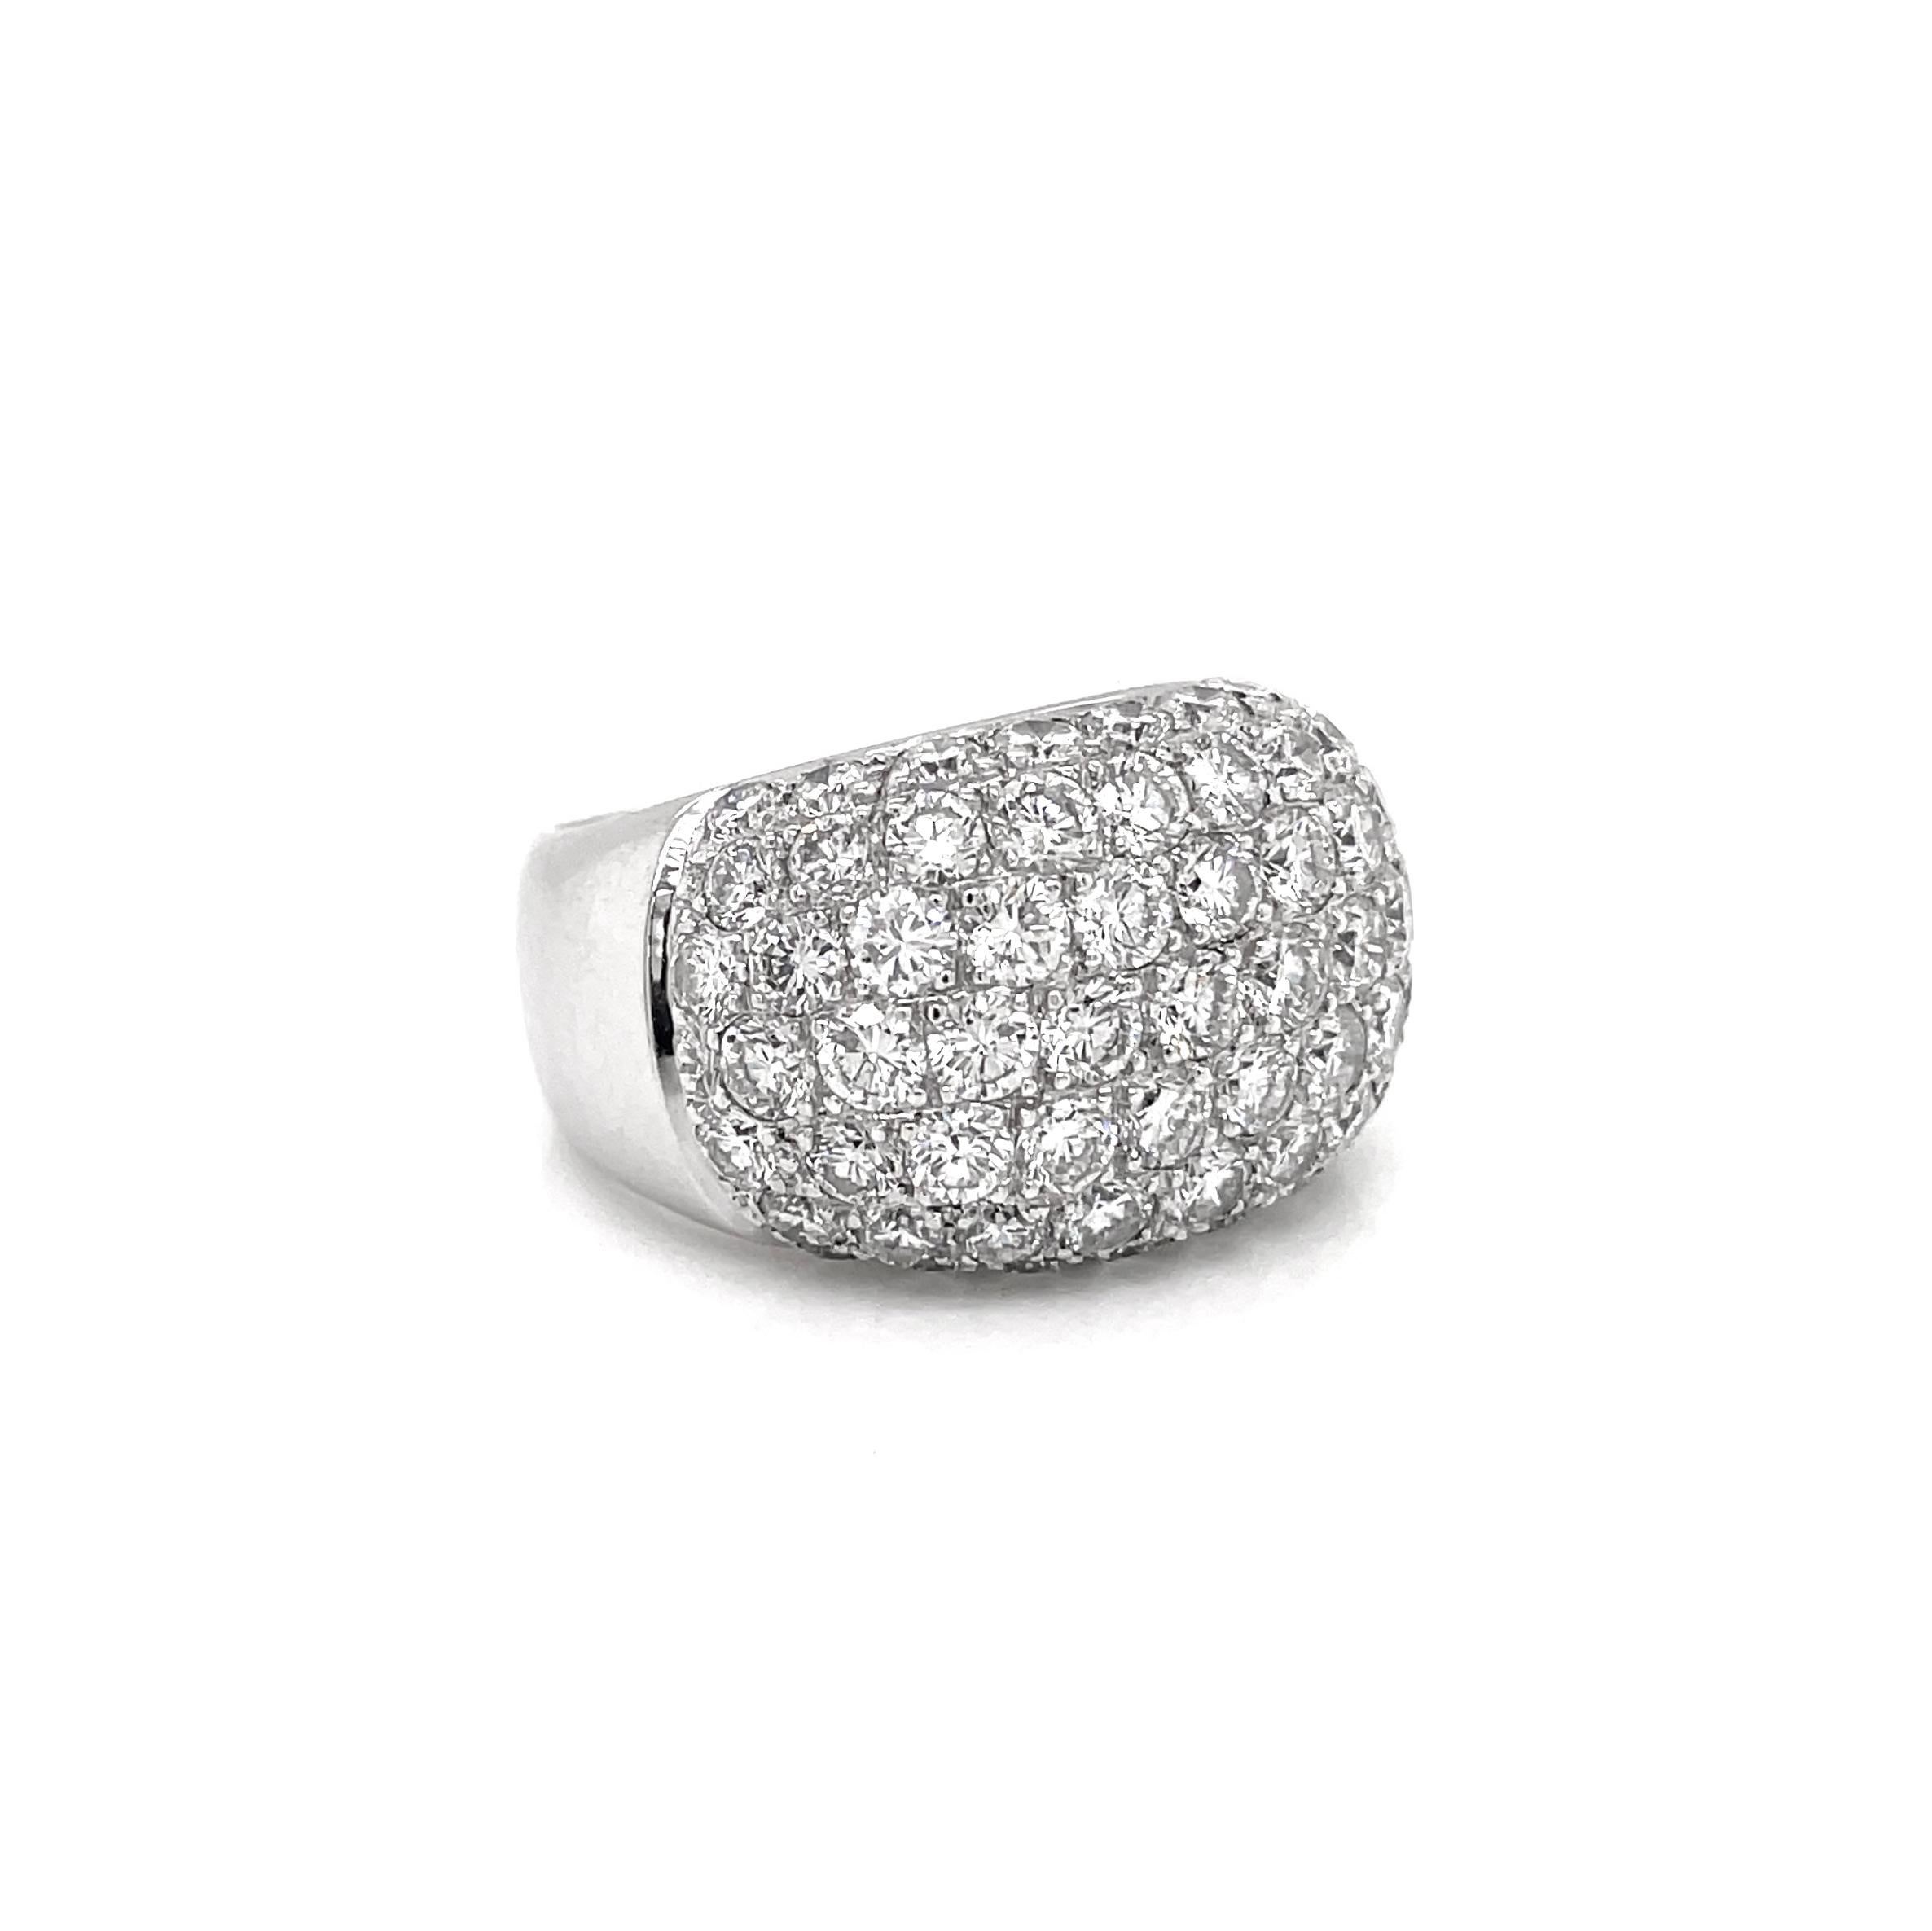 Dieser atemberaubende Bombé-Cluster-Ring ist mit 63 hochwertigen runden Diamanten im Brillantschliff mit einem ungefähren Gesamtgewicht von 4,50 ct besetzt. Alle Diamanten sind als Pavé in einer offenen Fassung aus 18 Karat Weißgold gefasst. Der